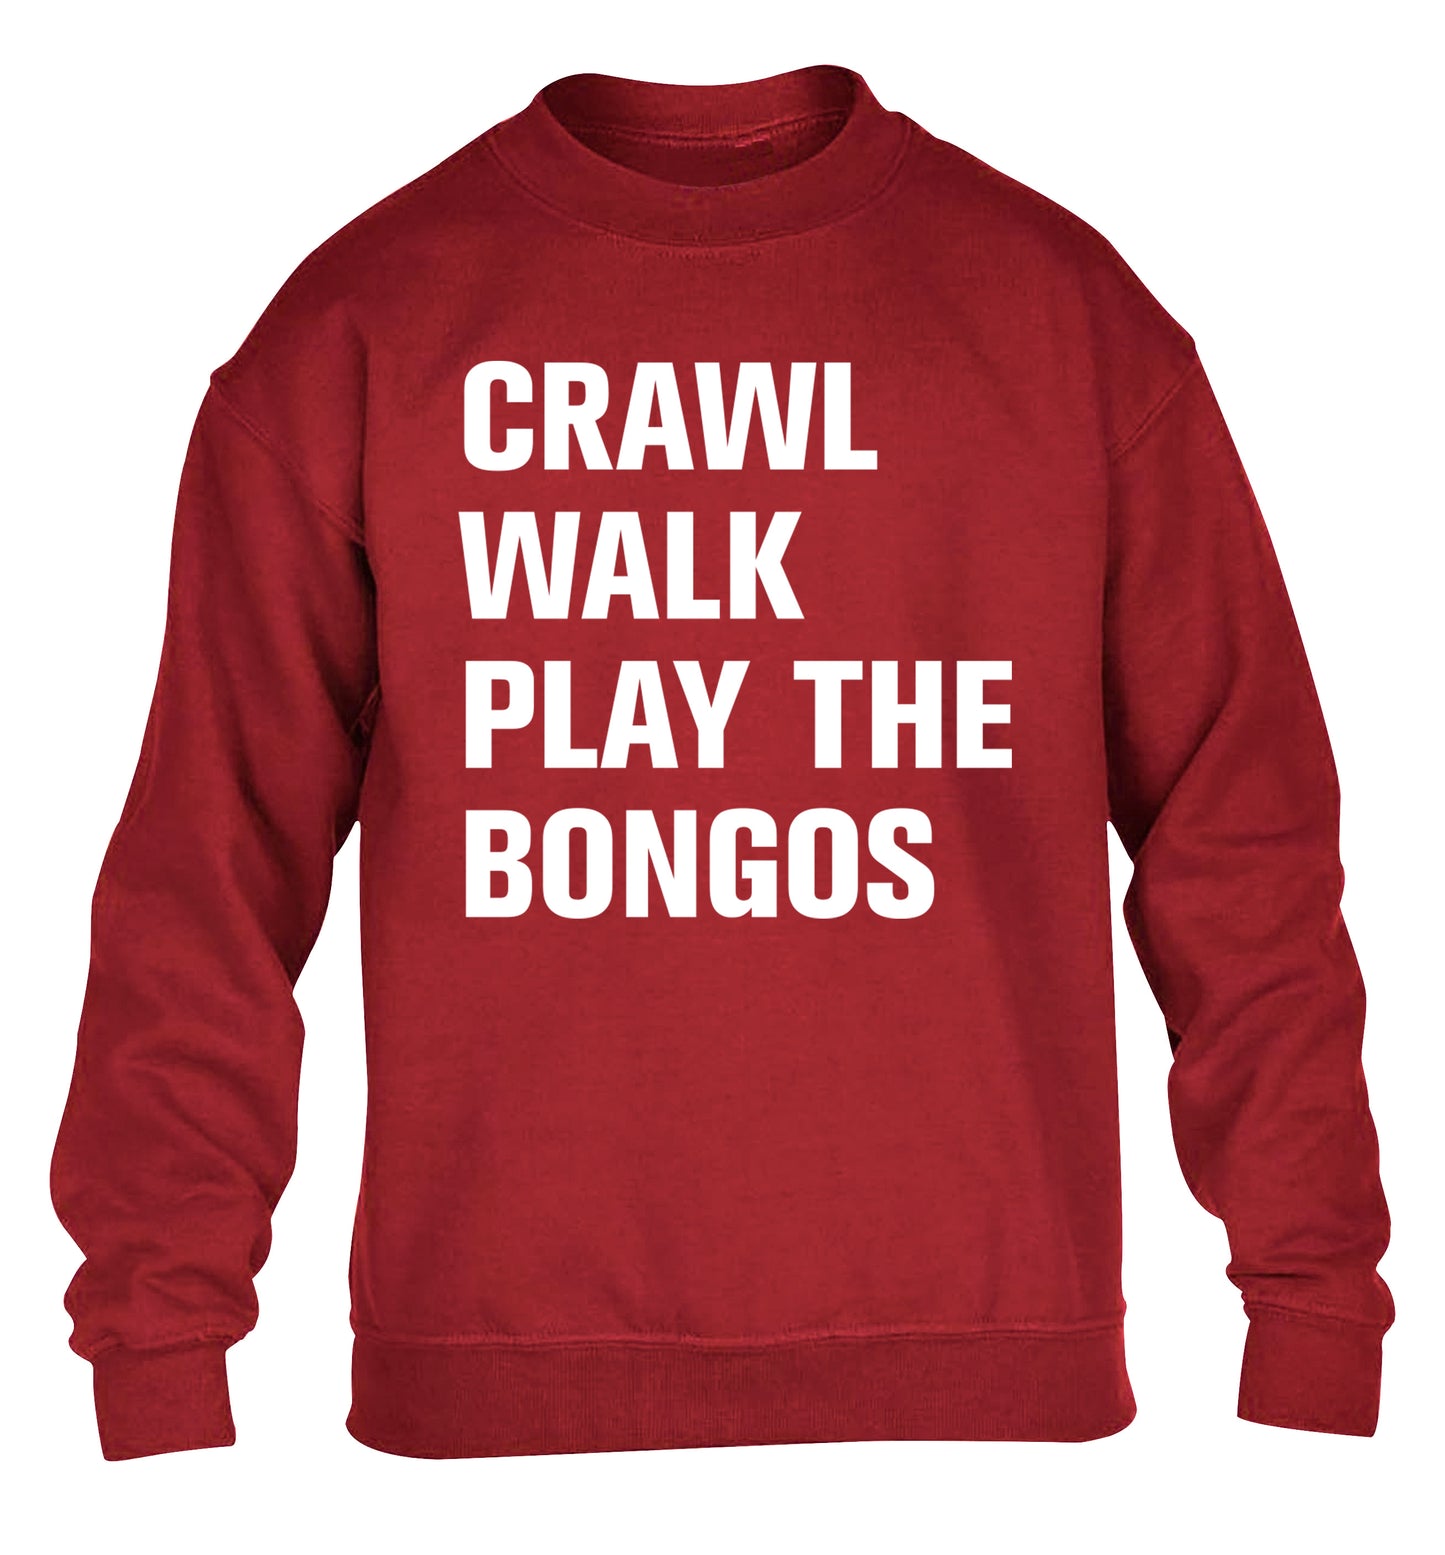 Crawl Walk Play Bongos children's grey sweater 12-13 Years